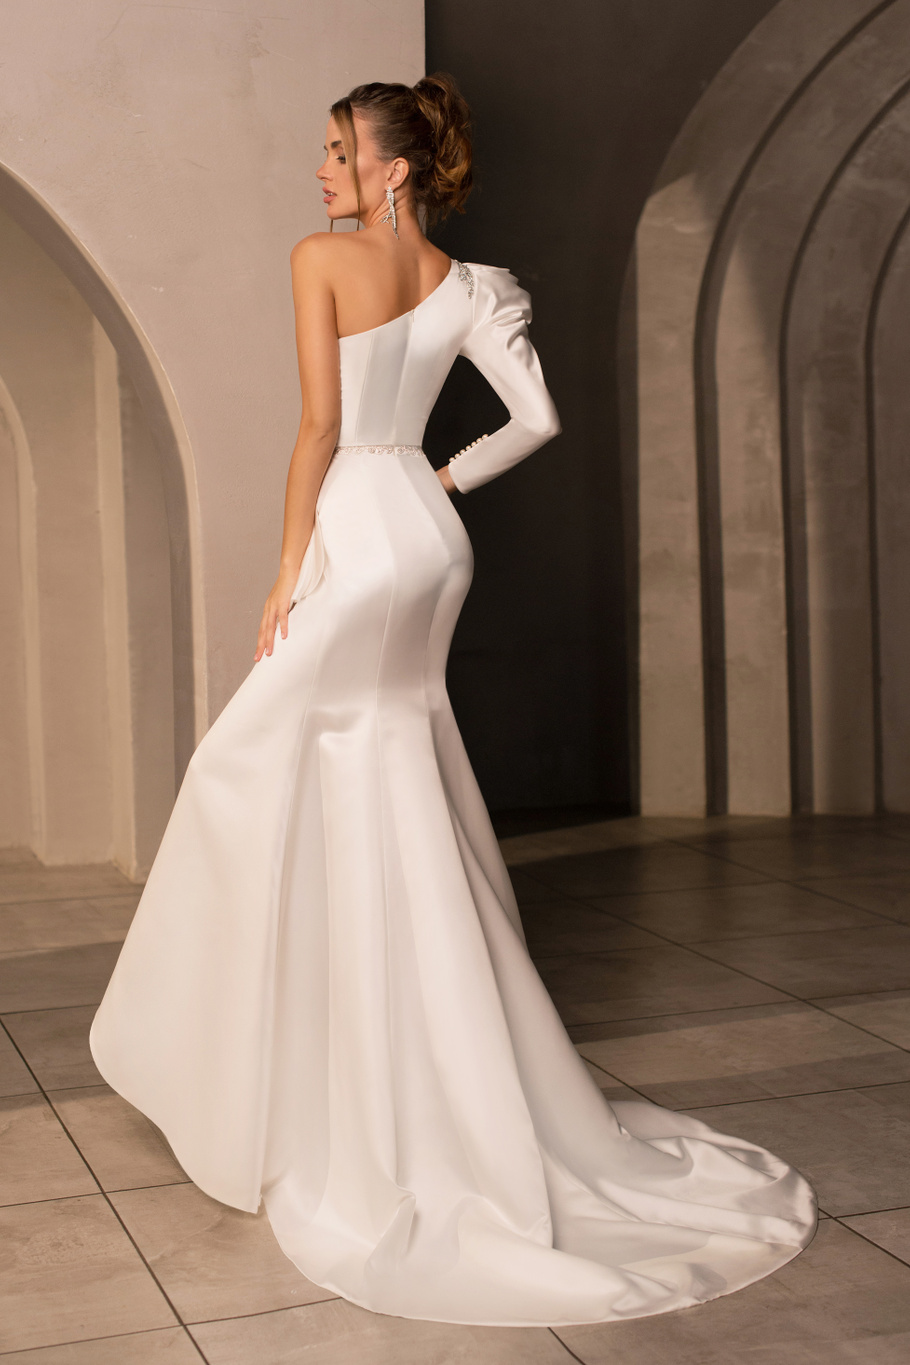 Купить свадебное платье «Левинс» Мэрри Марк из коллекции Минимализм 2023 года в салоне «Мэри Трюфель»